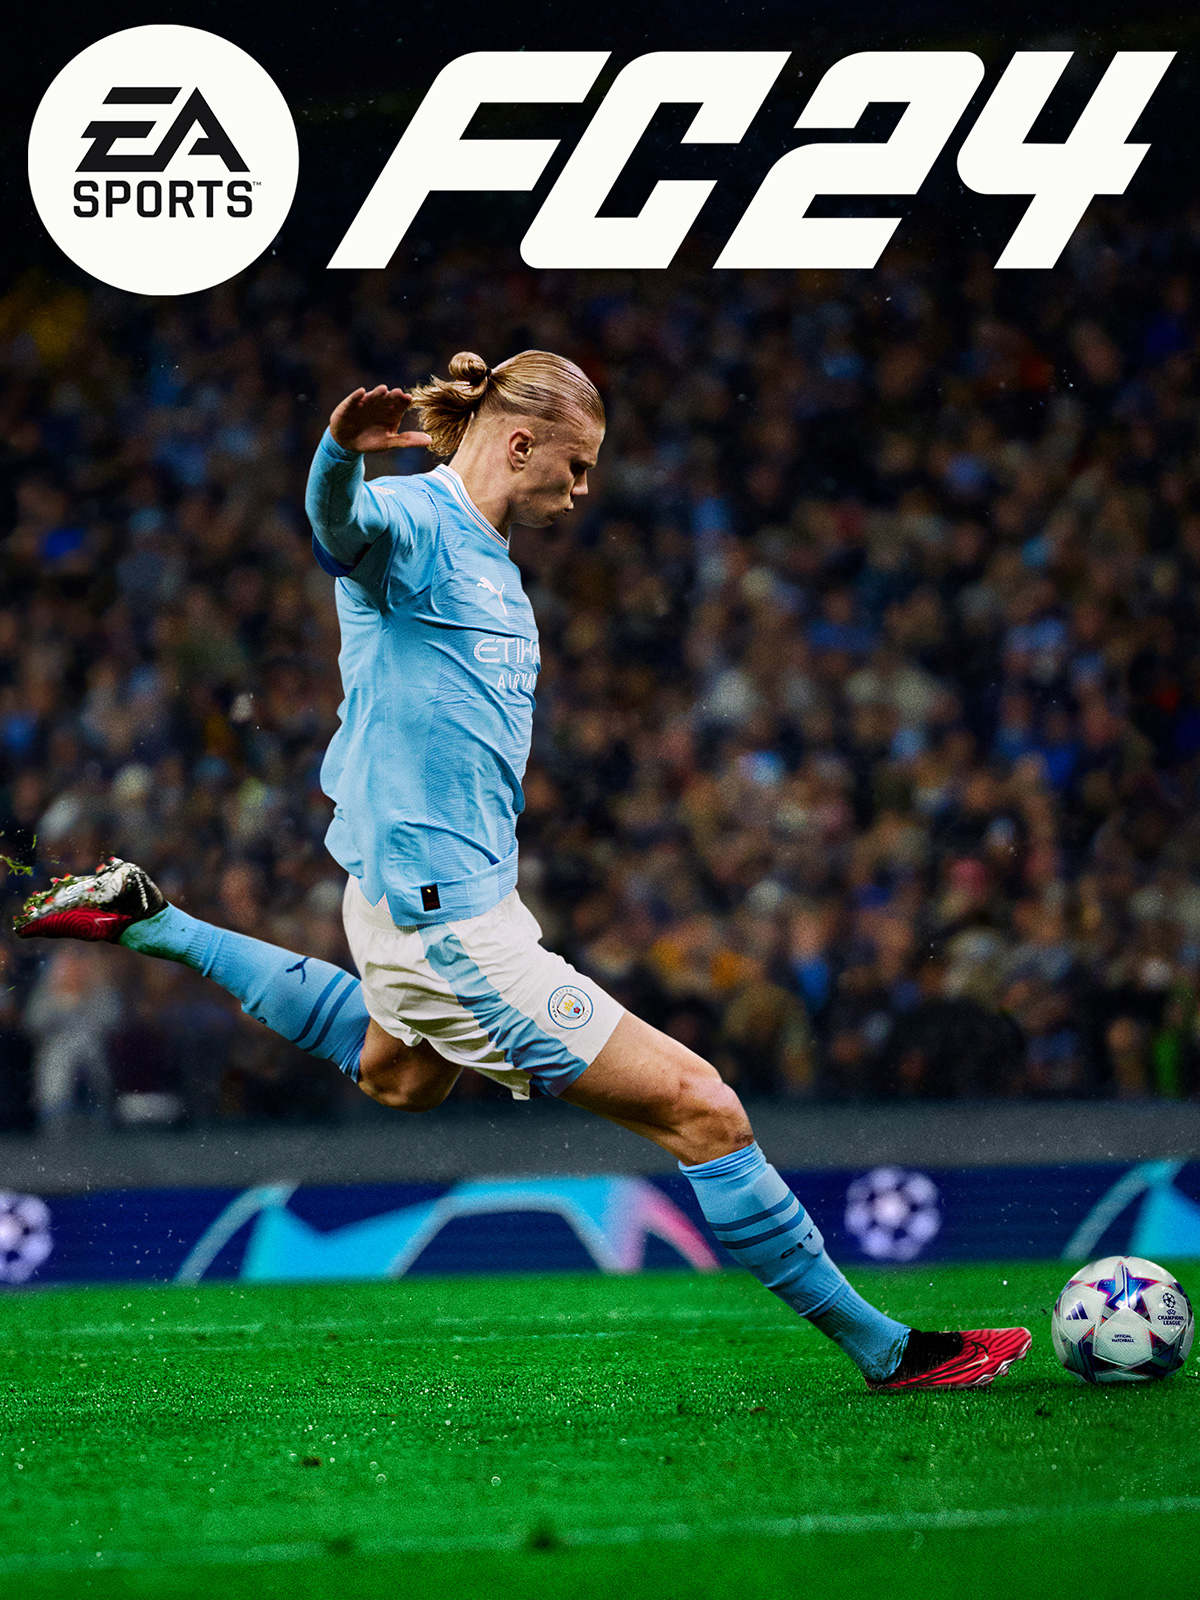 EA Sports FC 24 (FIFA 24) [PC, Цифровая версия] (Цифровая версия) ea sports fc 24 fifa 24 [pc цифровая версия] цифровая версия